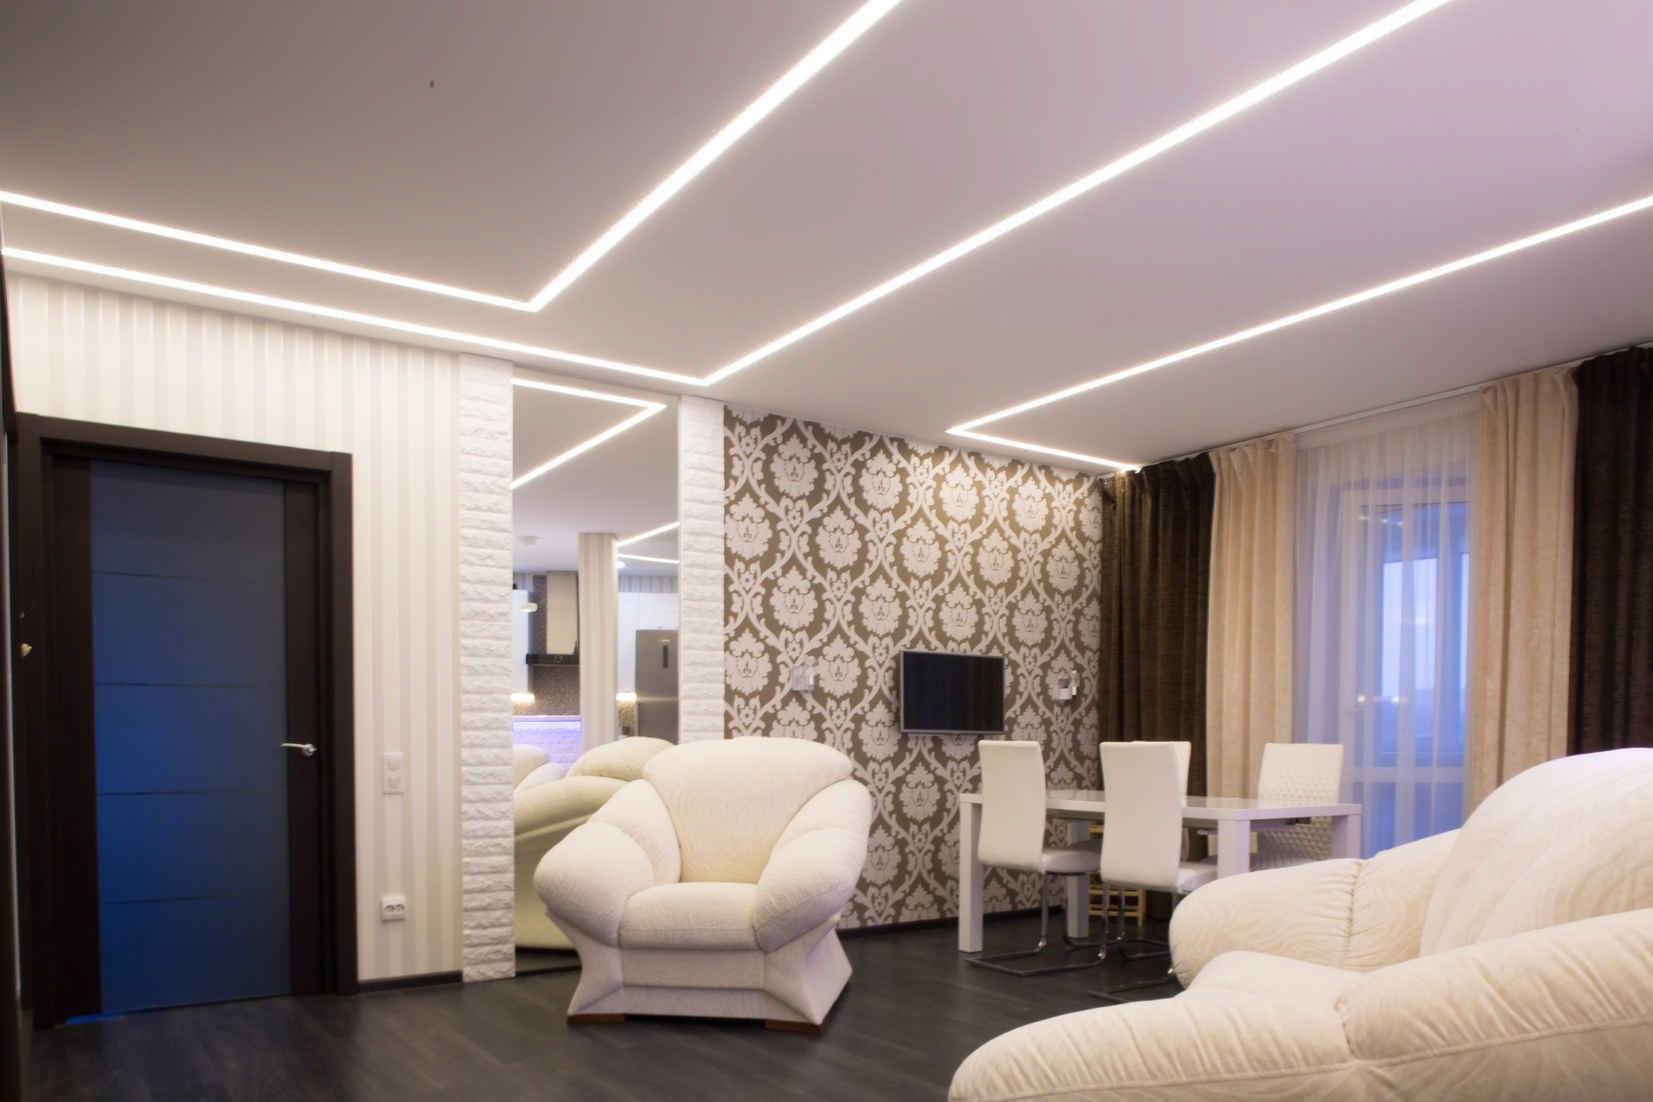 Освещение в гостиной с натяжным потолком: расположение точечных светильников в зале